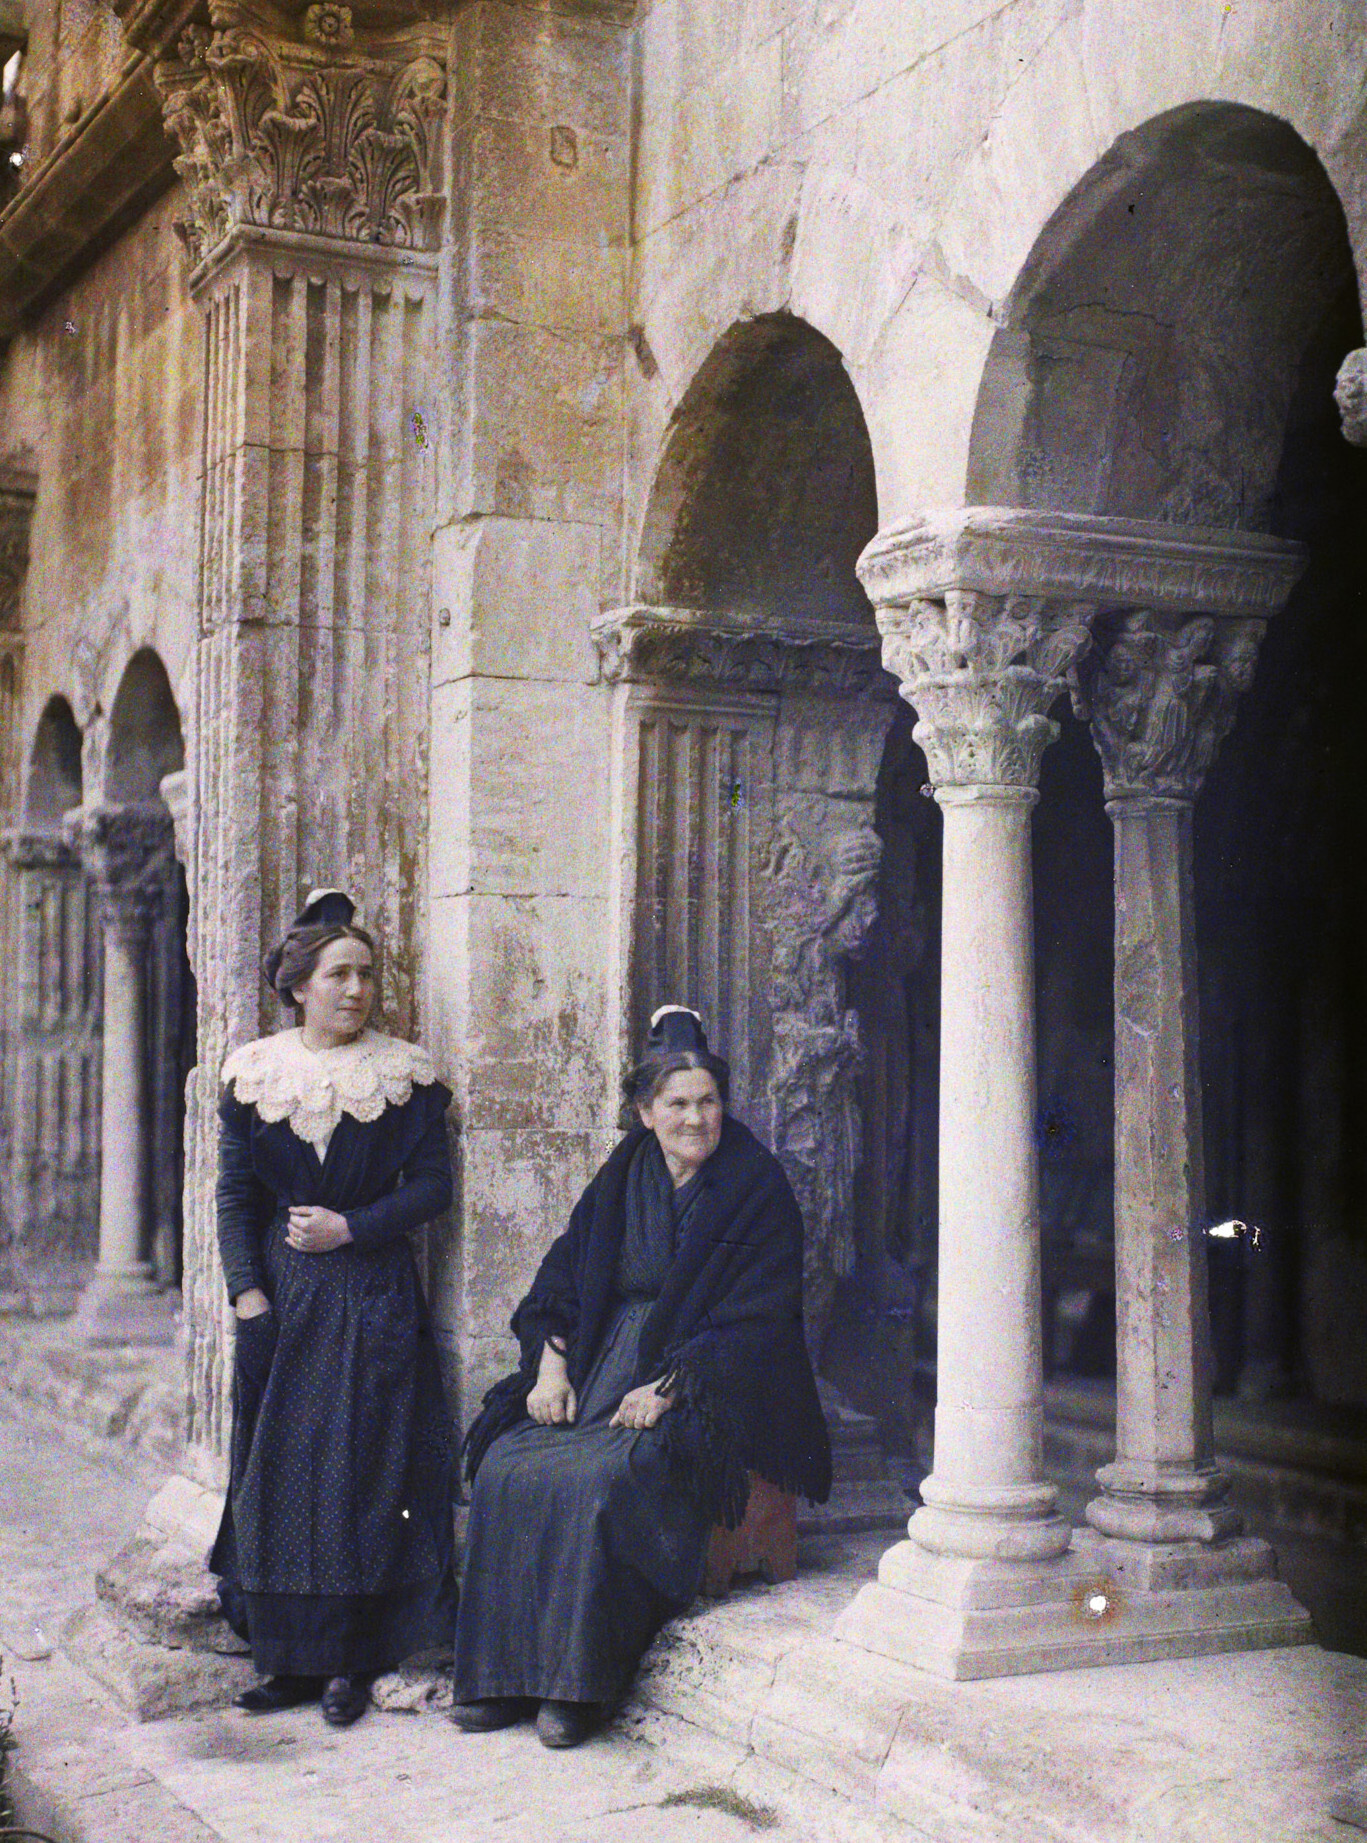 Арль, Франция. Портрет арлезианок, мадам Аллеман и мадам Мари Бюссе, 1916 год, автор Огюст Леон (автохром)